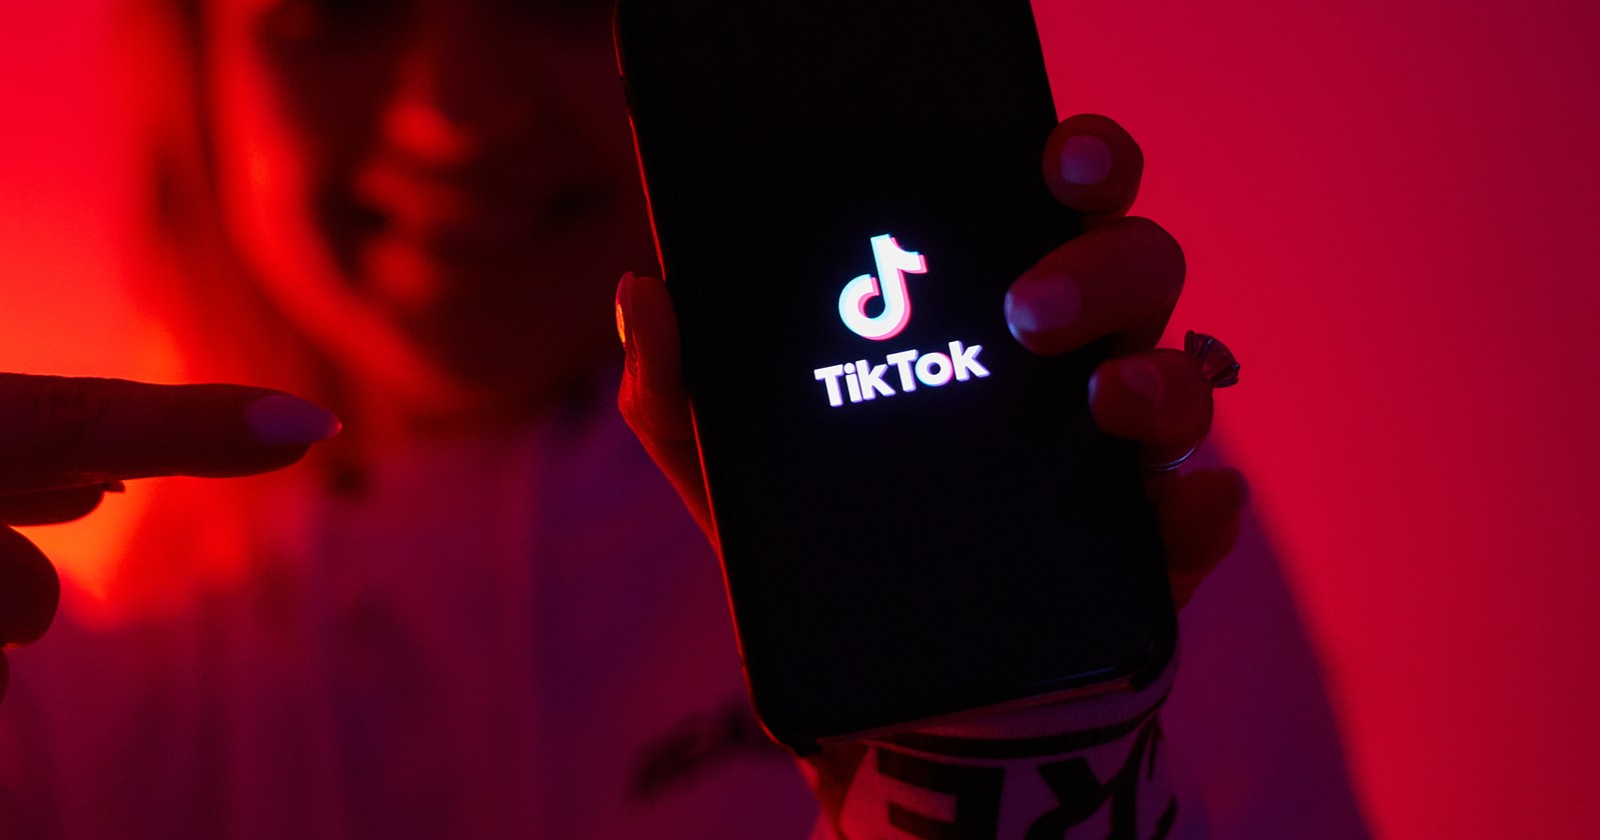 Αυτοκτονία 14χρονου στα Κάτω Πατήσια: Σύνδεση με το Blackout challenge ψάχνουν οι αρχές - Μήνυση στο TikTok